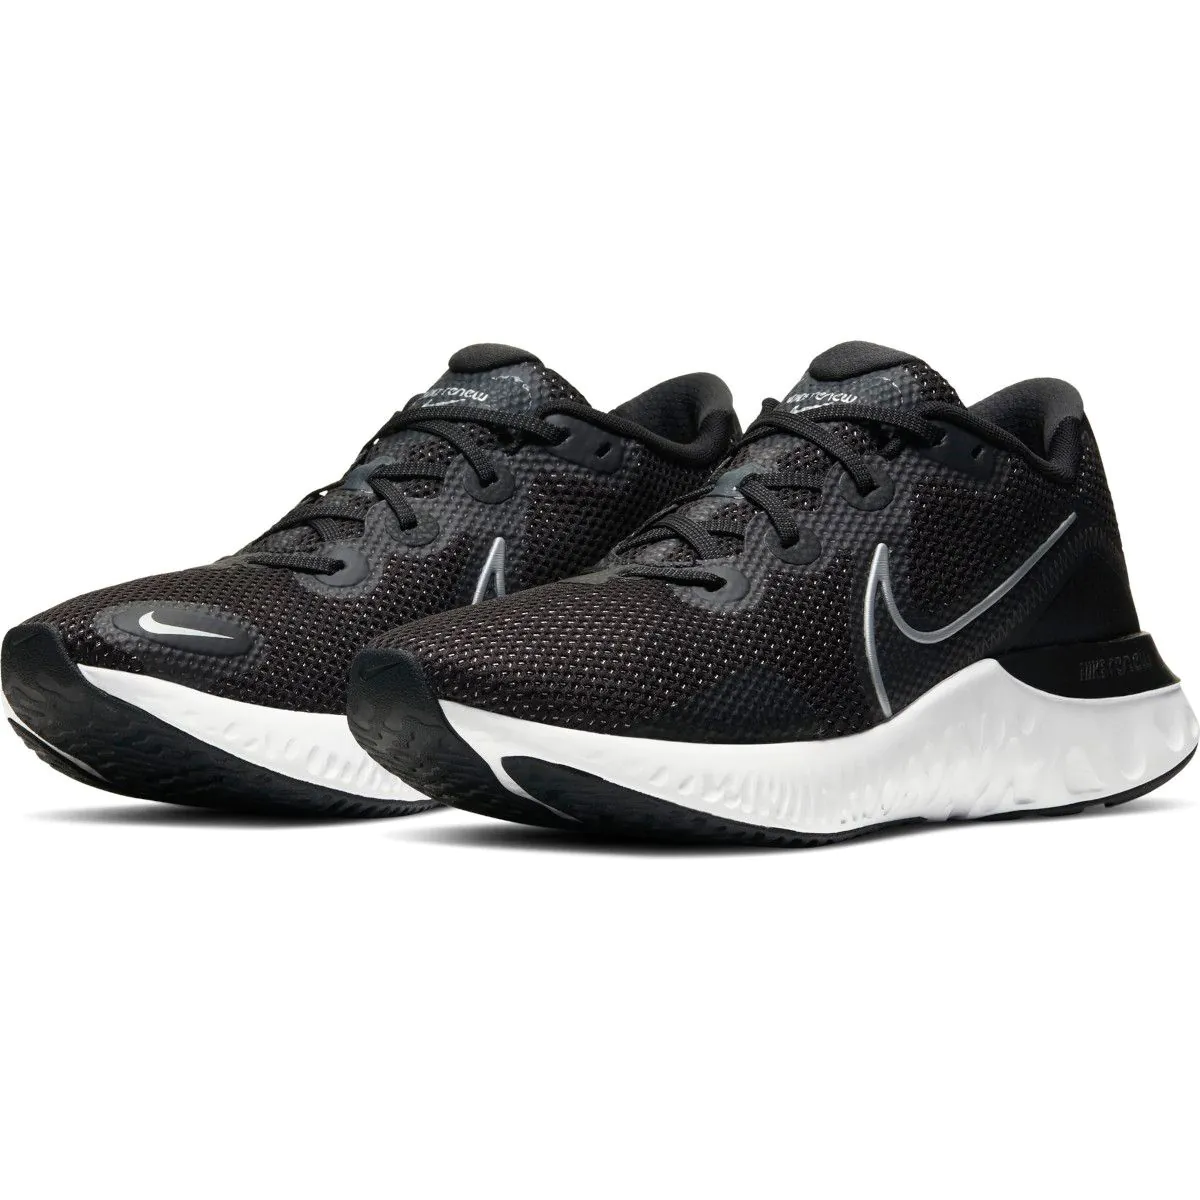 Nike Renew Run Men's Running Shoes CK6357-002